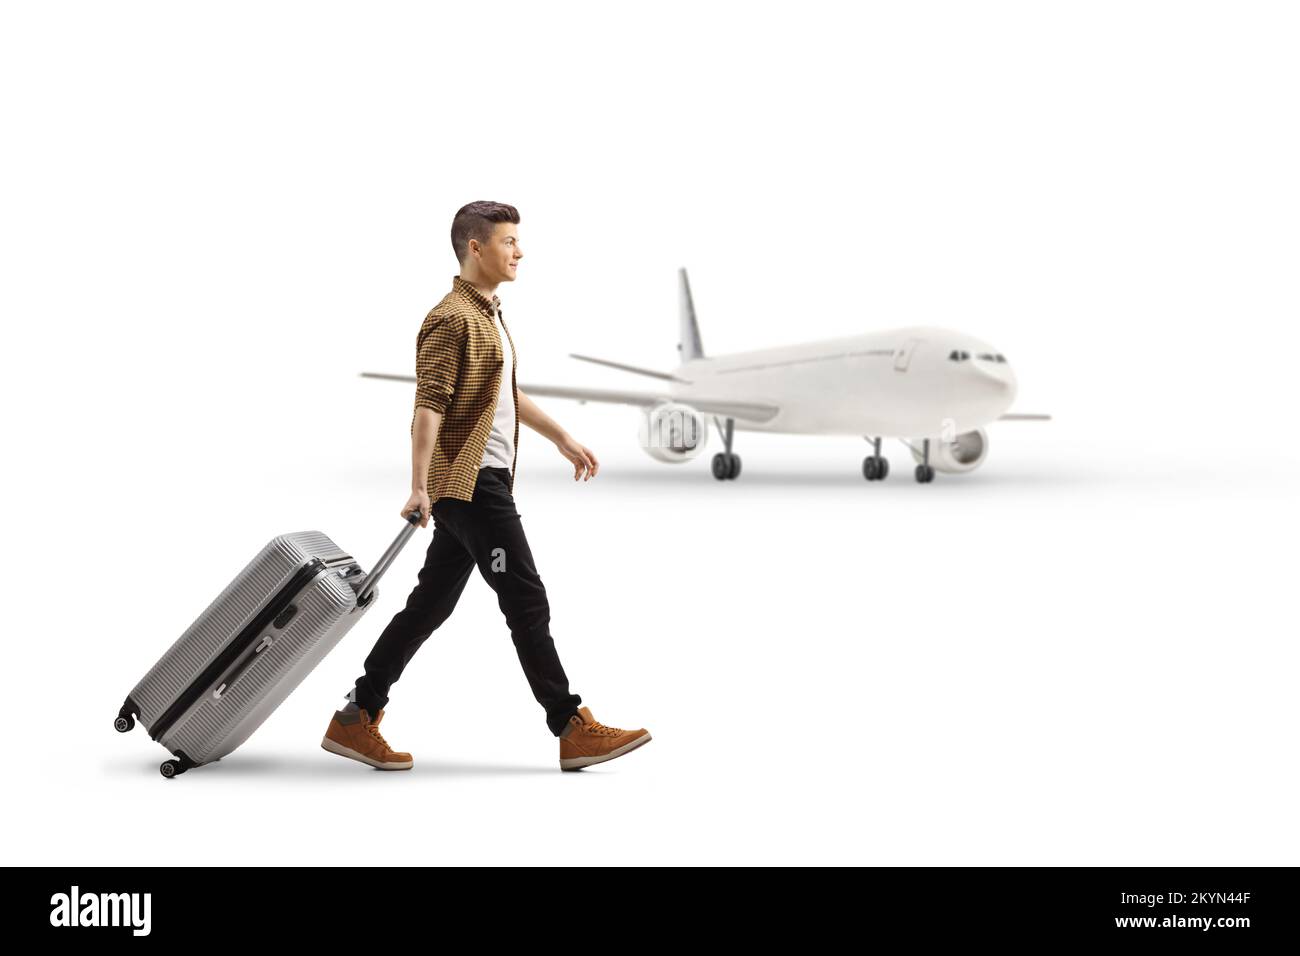 Vue en profil d'un jeune homme marchant et tirant une valise devant un avion isolé sur fond blanc Banque D'Images